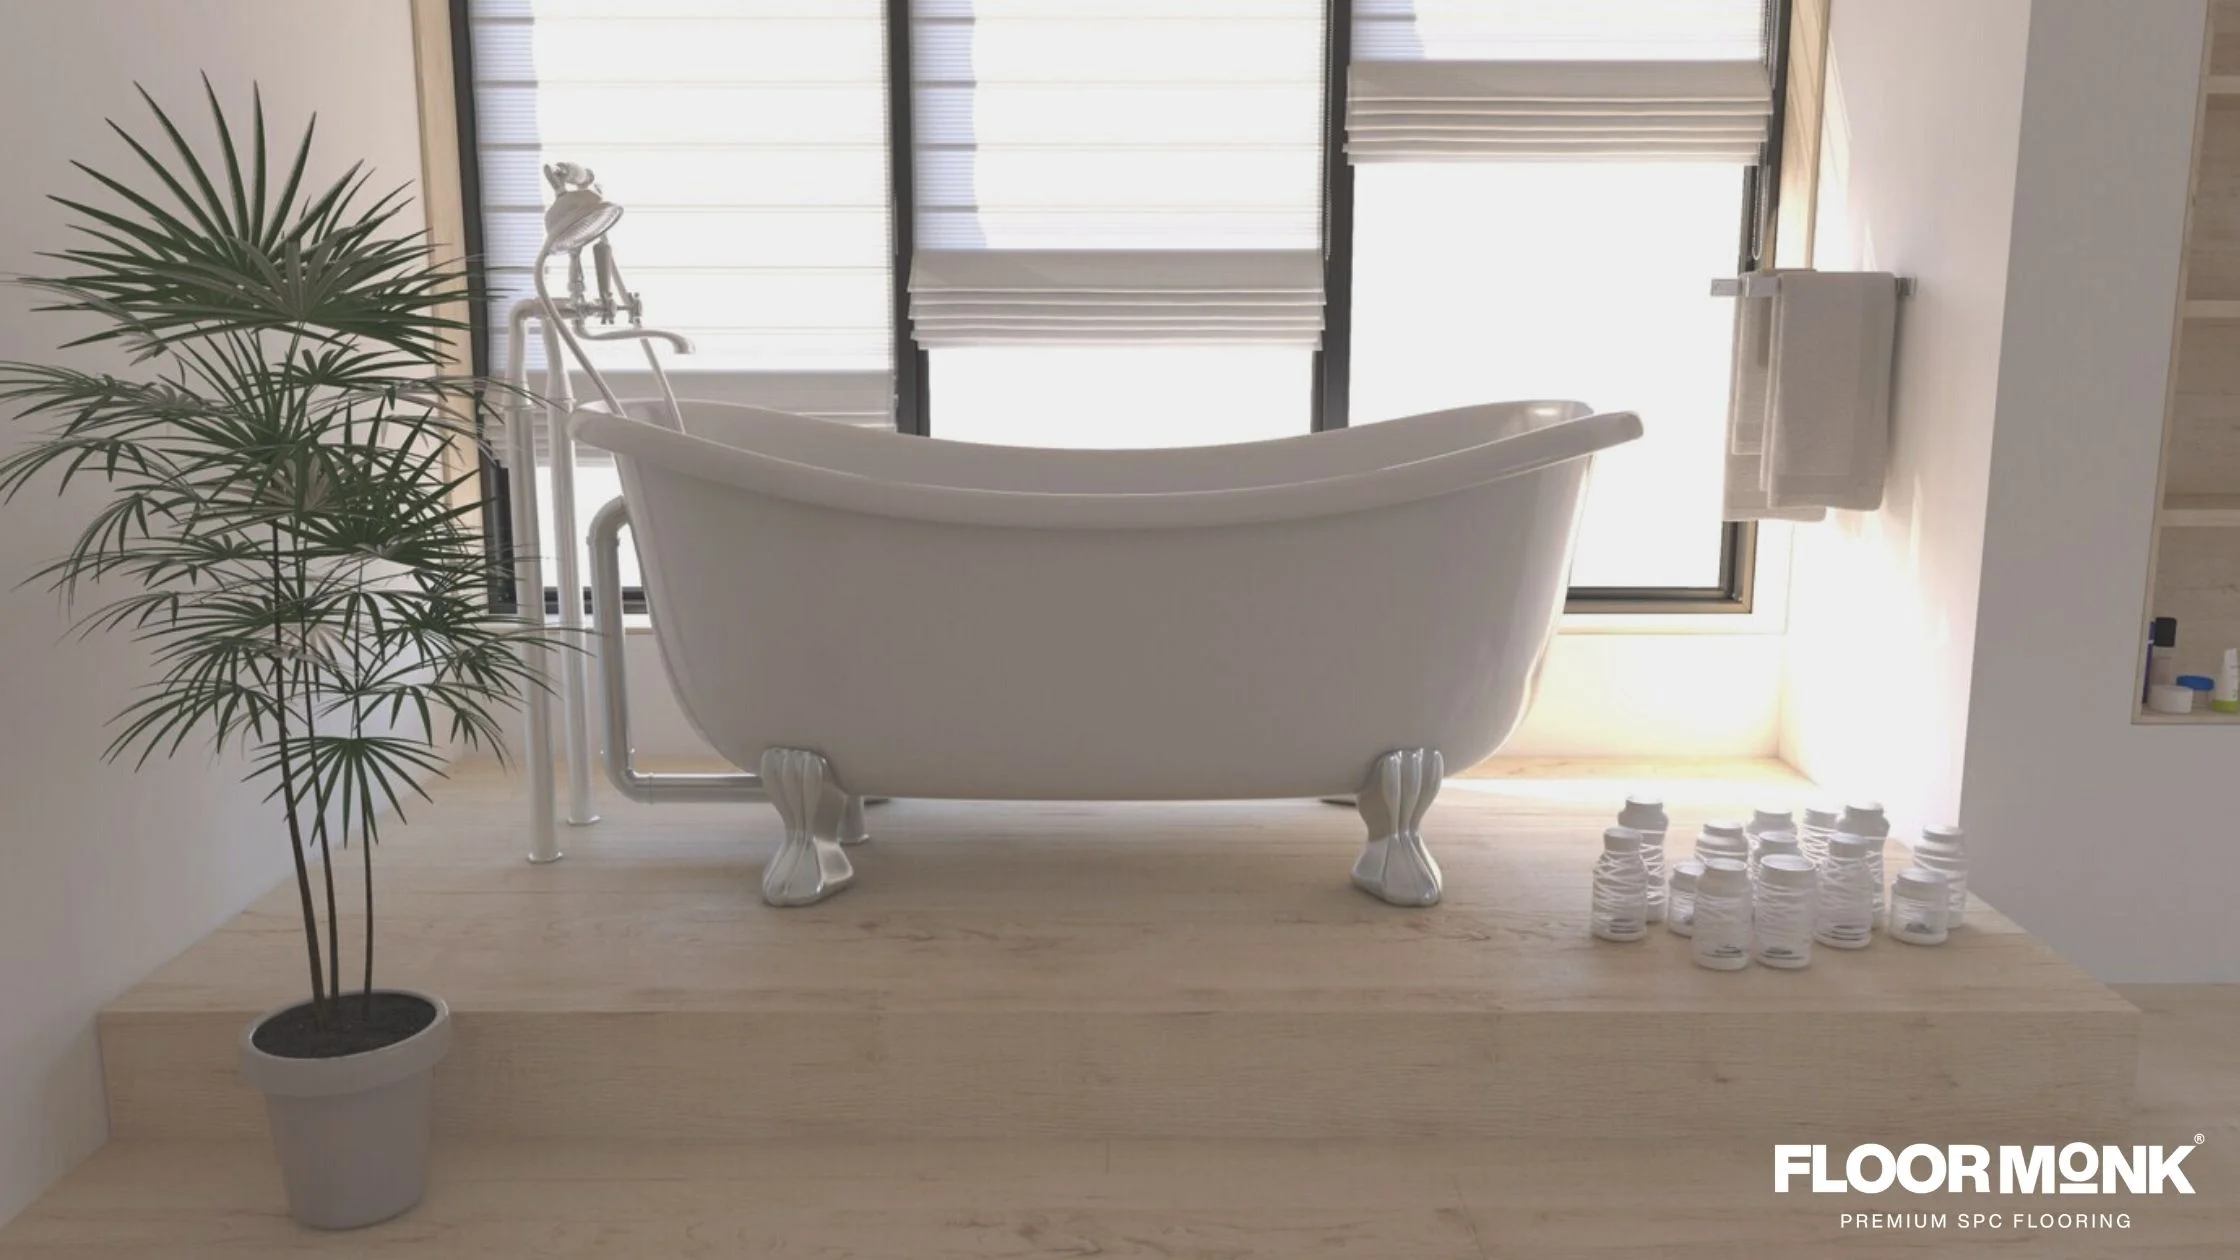 Is Engineered Wood Flooring Adequate for a Bathroom?